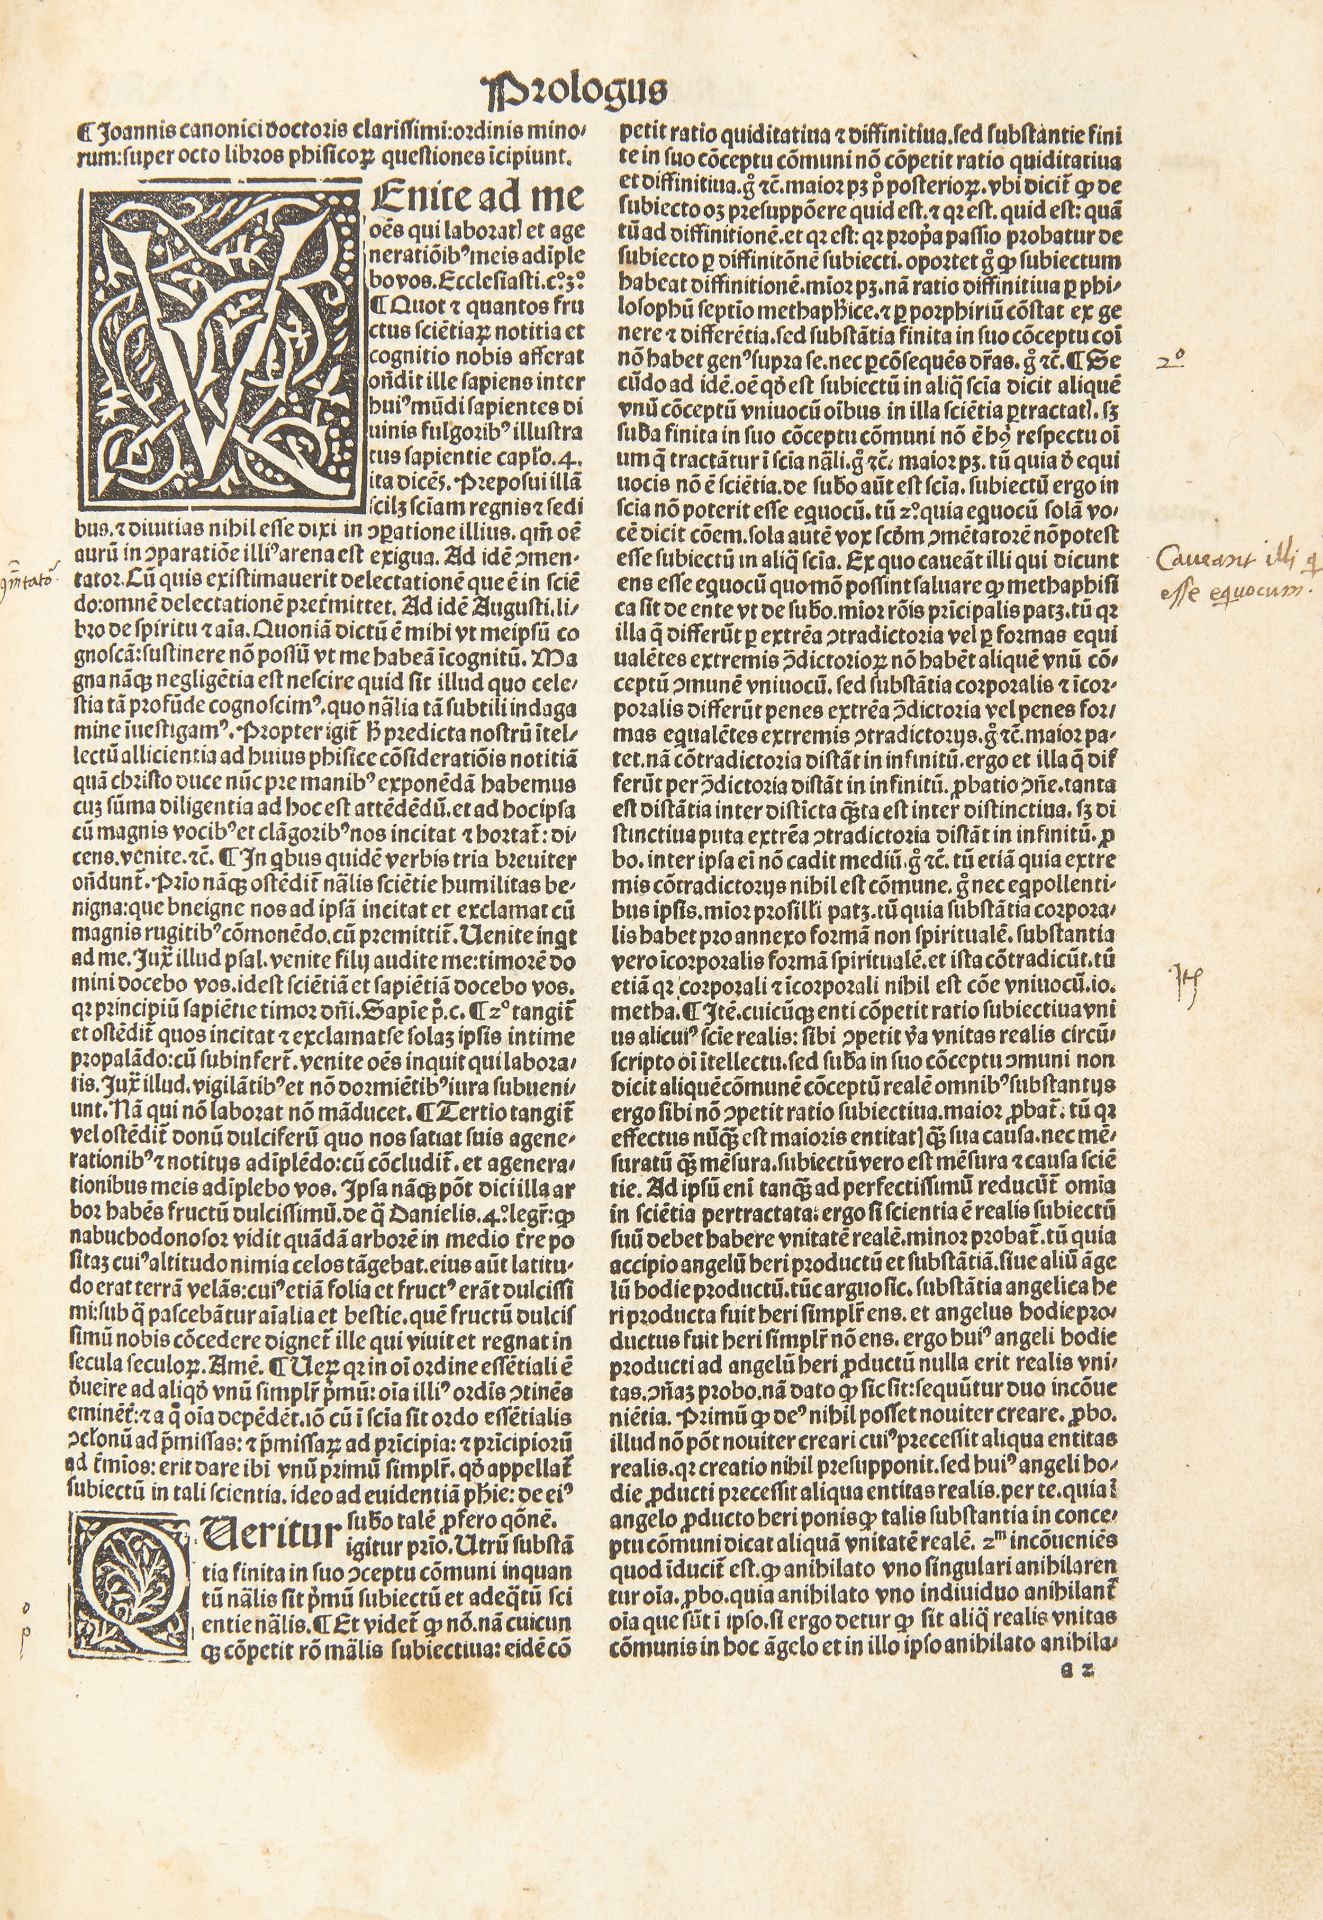 [ARISTOTLE] DOMINICUS DE FLANDRA (1425-1500). Commentaria super libris posteriorum Aristotelis,